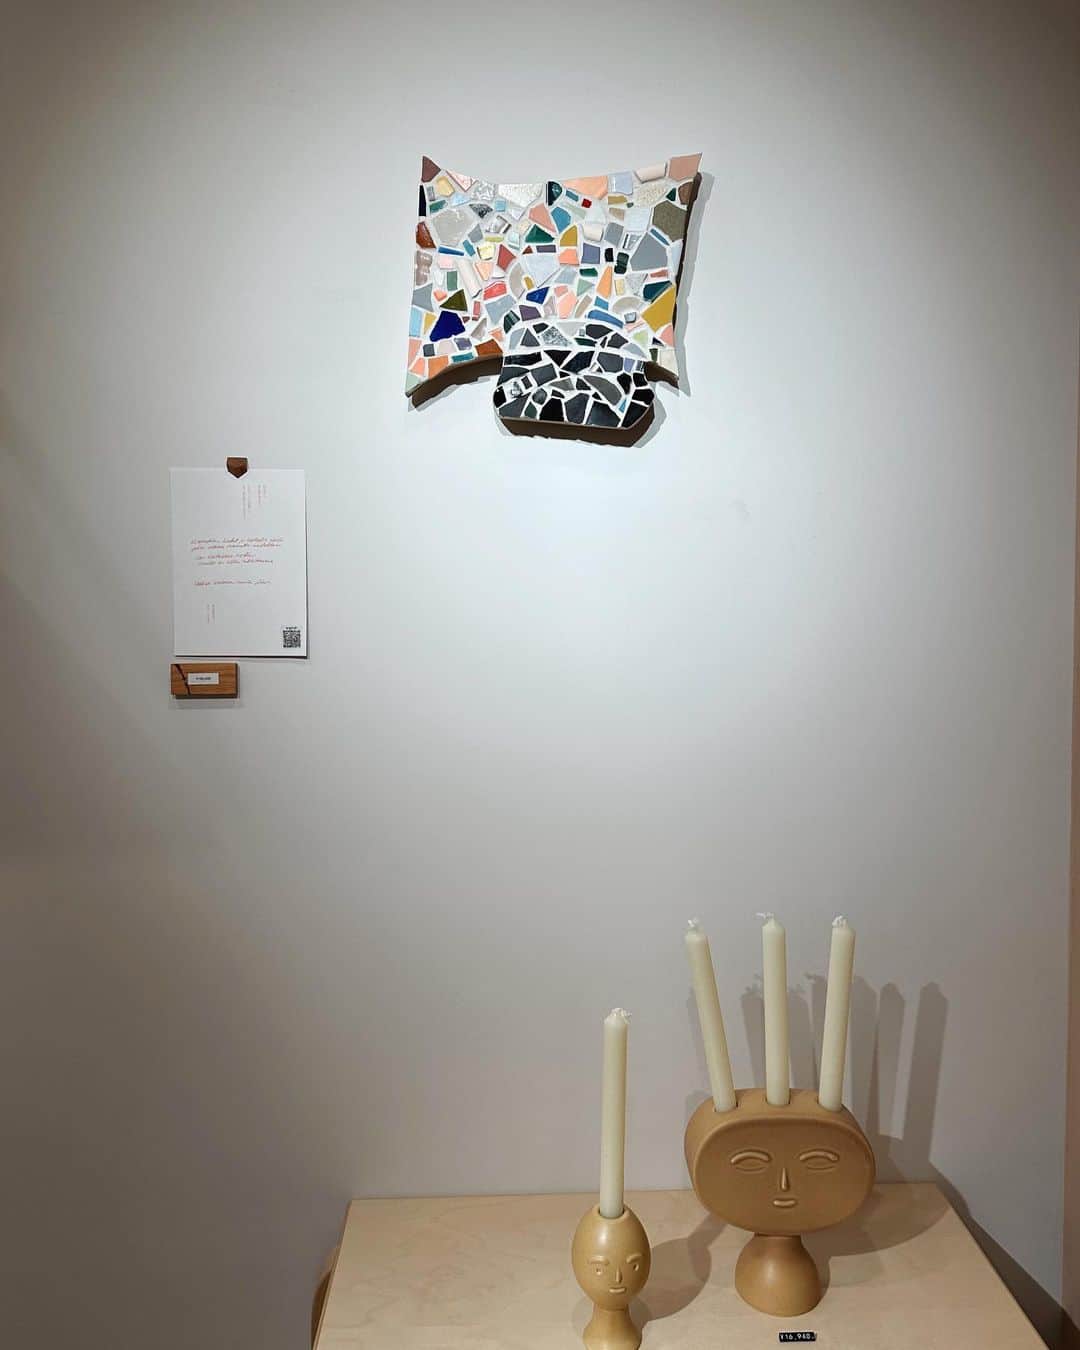 早坂香須子さんのインスタグラム写真 - (早坂香須子Instagram)「2014年にフィンランド・ヘルシンキへ旅した時に出会った若きグラフィックデザイナー、AYA IWAYAさんの個展  「『a living form』名のないキモチのカタチ展」  開催中のArtek Tokyo Storeへ行ってきました。  作品は、フィンランド人アーティストの詩によって表現された「まだ名前が与えられていない曖昧な感情」を、AYAさん自身の解釈を加えながら多治見のモザイクタイルによって視覚化したもの。  まずは作品を見て感じてから、詩を読み、考察し、再度作品を見て浮かび上がる最初との感覚や視点の違いが面白くて。  エンタメに溢れ、感想の答え合わせもAIに正解も求められる便利な時代だけど、言葉になる前の見えない（気持ち）で遊ぶのは、自分の内側が膨らむような豊かな時間でした。  フィンランドでは「自分で考える力」に重点を置く教育がベースにあり、その結果が世界幸福度ランキング1位の国に繋がっていると考えられているそうです。  AYAちゃんはこれまでに、私がディレクションした入浴剤のパッケージデザインや、ブランドビジュアルなどのお仕事で、私の頭の中を見事に”見える形”にしてくれたのですが、それは技術やセンスはもちろん、「考える力」によって引き出されていたのですね。  フィンランドデザインに囲まれた空間で考える。とても贅沢な時間をぜひ体験してみて✨  　　　　　　⚪︎⚪︎⚪︎⚪︎⚪︎⚪︎⚪︎  フィンランドを代表する日本人グラフィックデザイナーAYA IWAYA 日本で初となる個展「『a living form』名のないキモチのカタチ展」   東京・表参道Artek Tokyo Store（アルテック 東京ストア）で8月28日まで開催中です。  #アルテック#フィンランド#デザイン#ayaiwaya#artek#art」8月13日 18時02分 - kazukovalentine